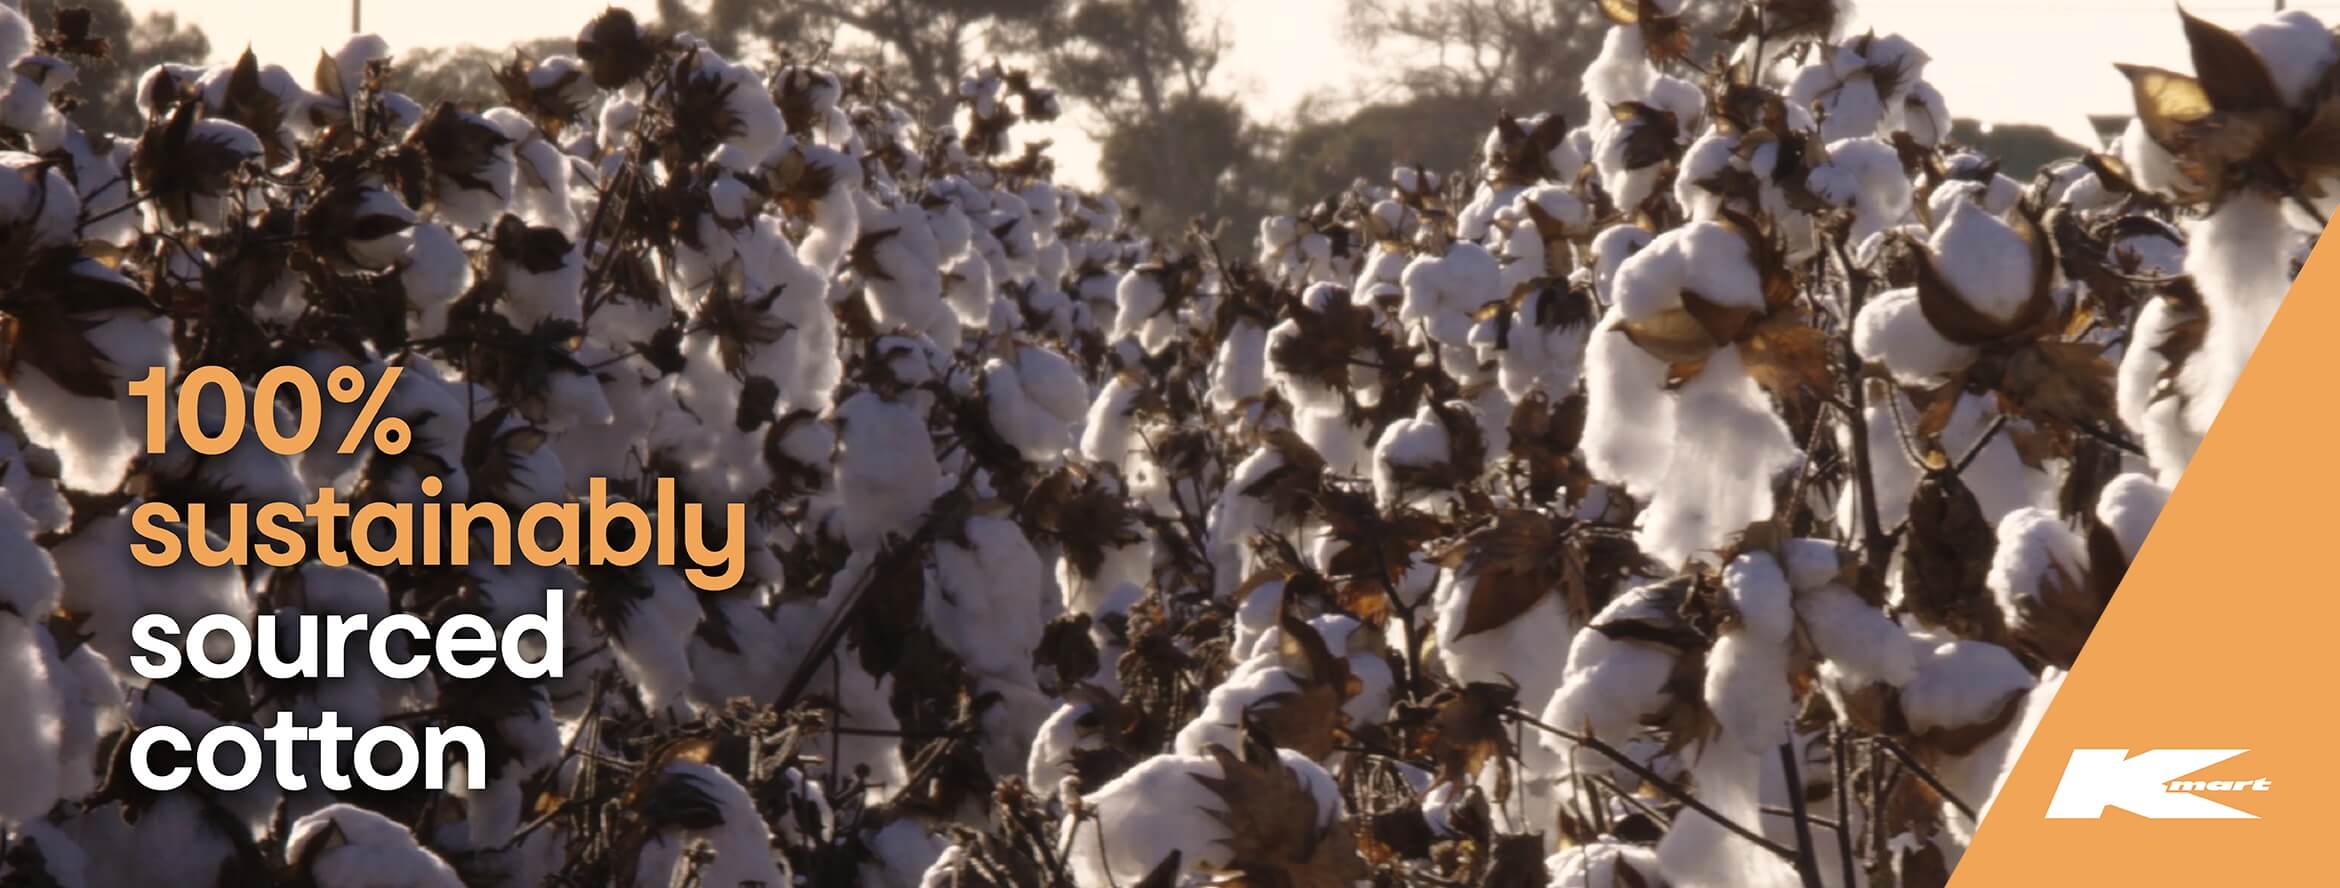 Cotton - Kmart